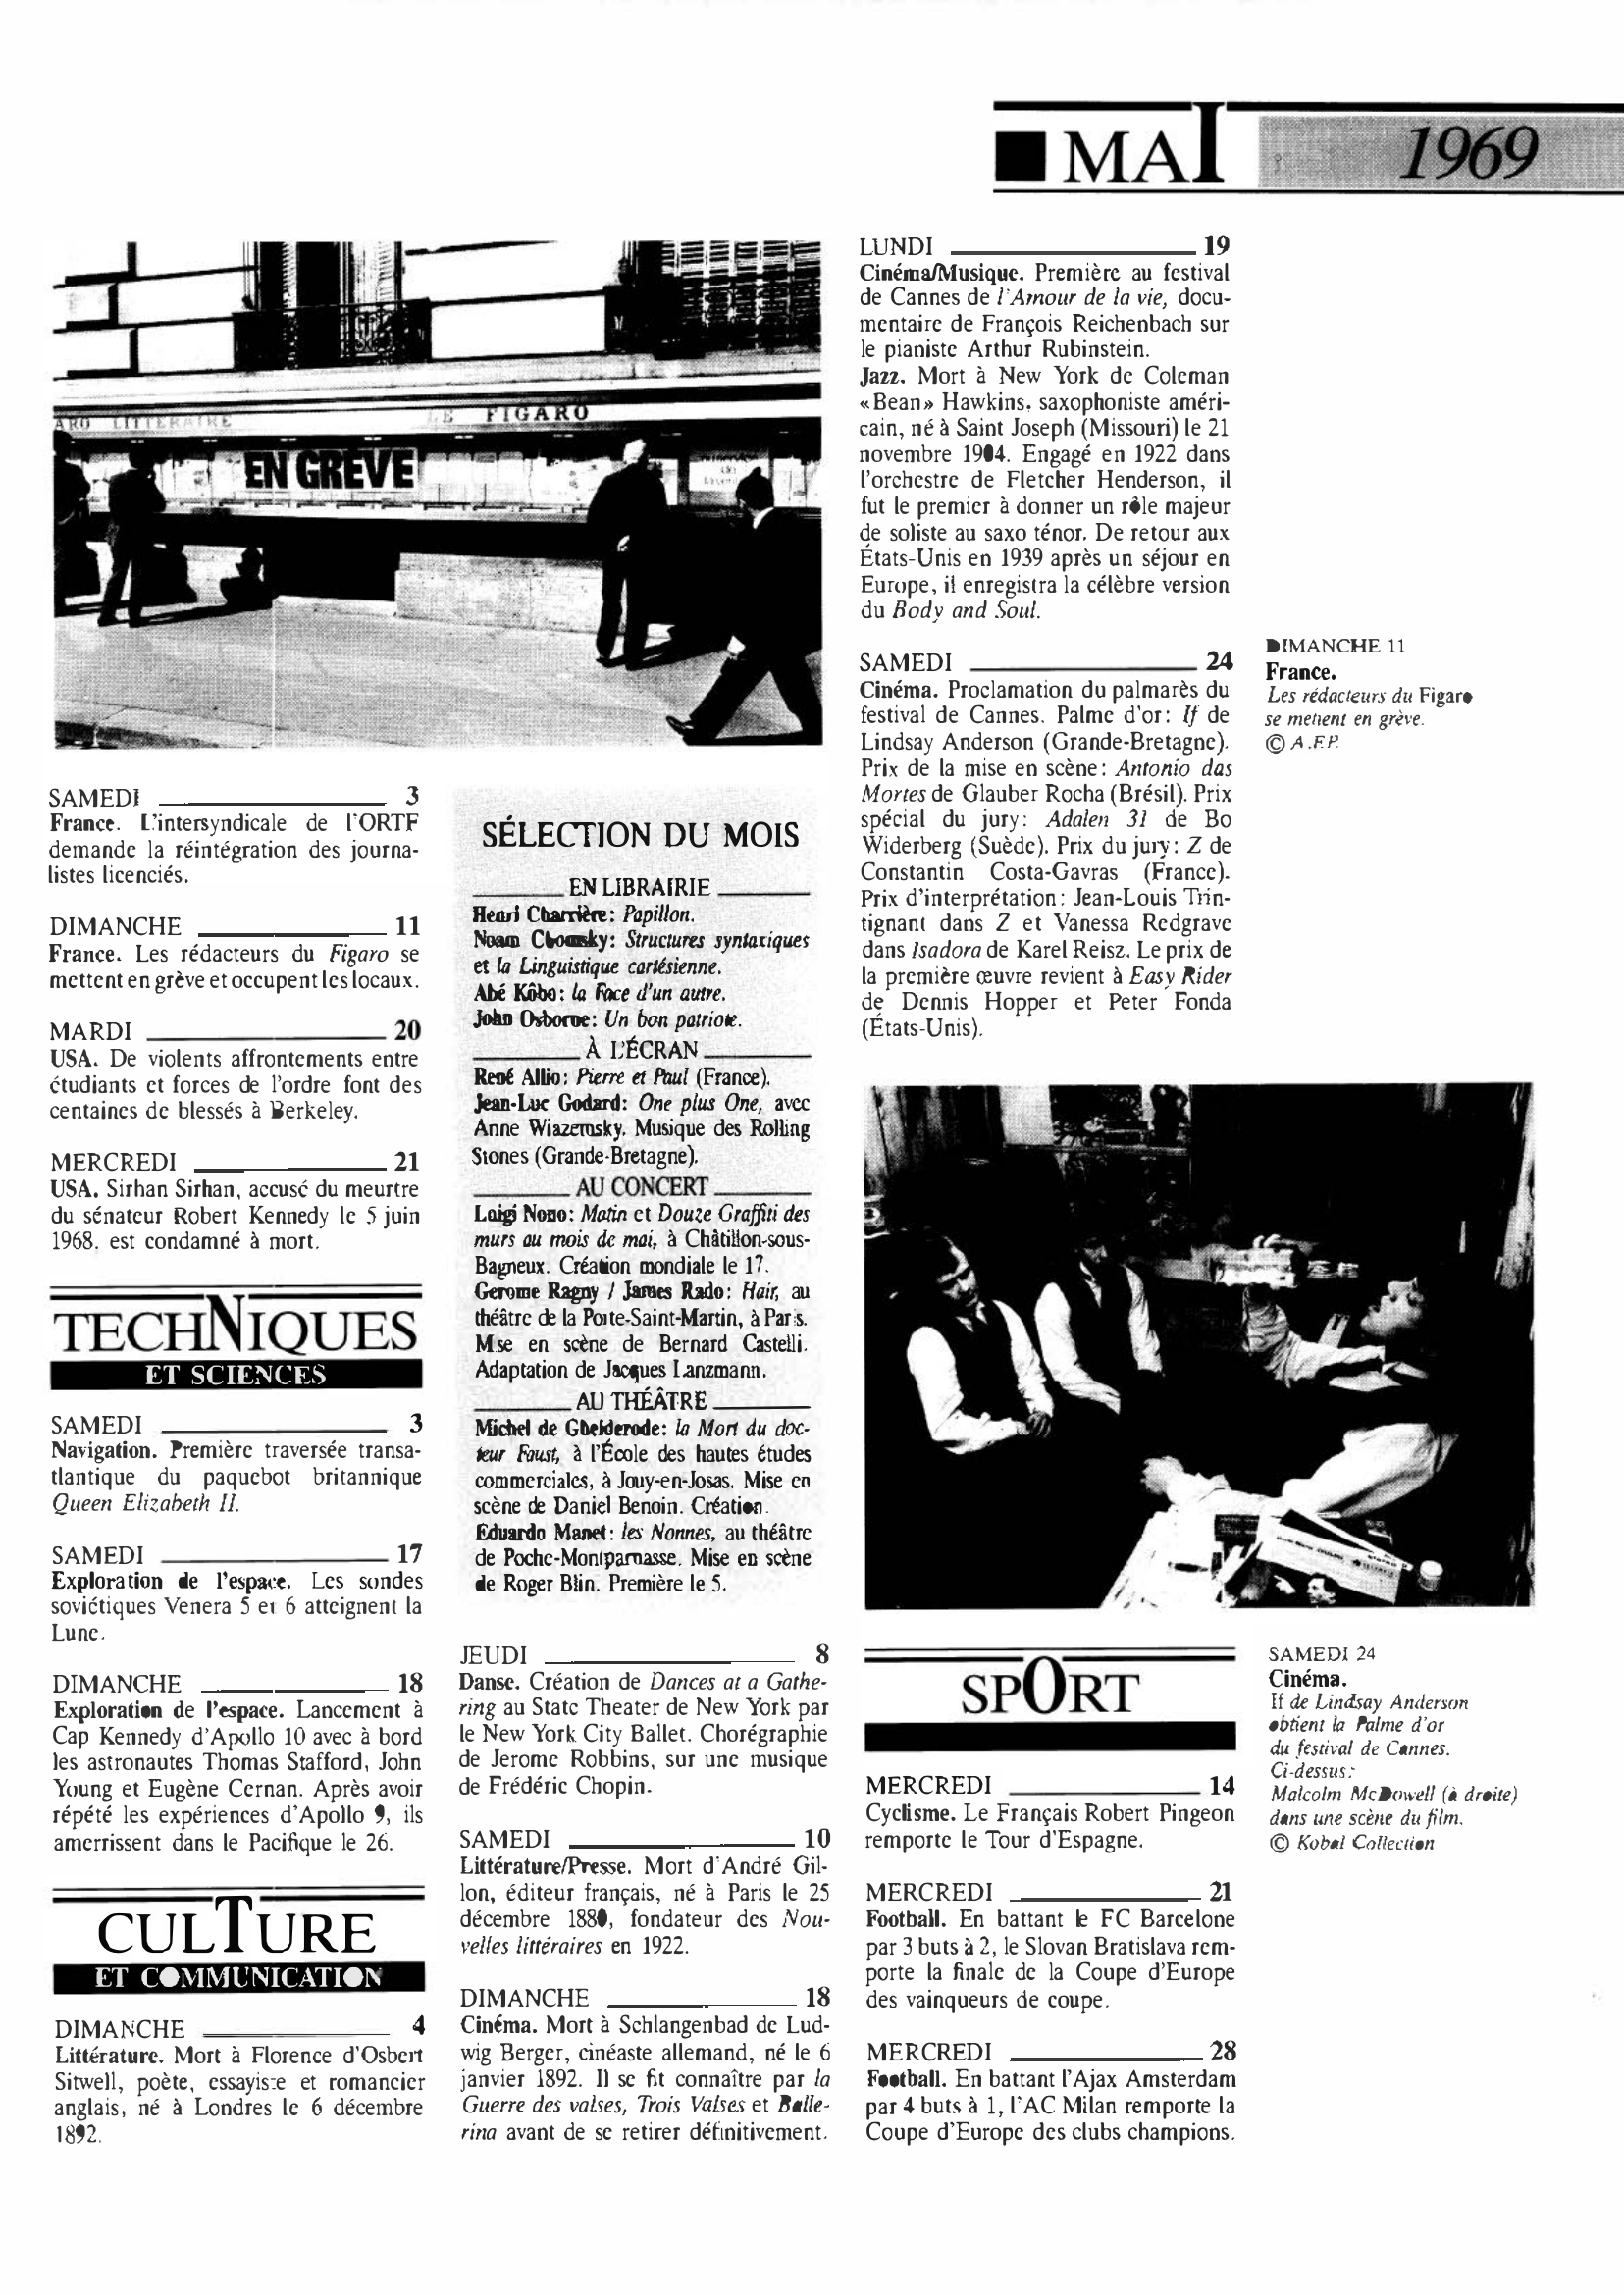 Prévisualisation du document Mai 1969 dans le monde (histoire chronologique)